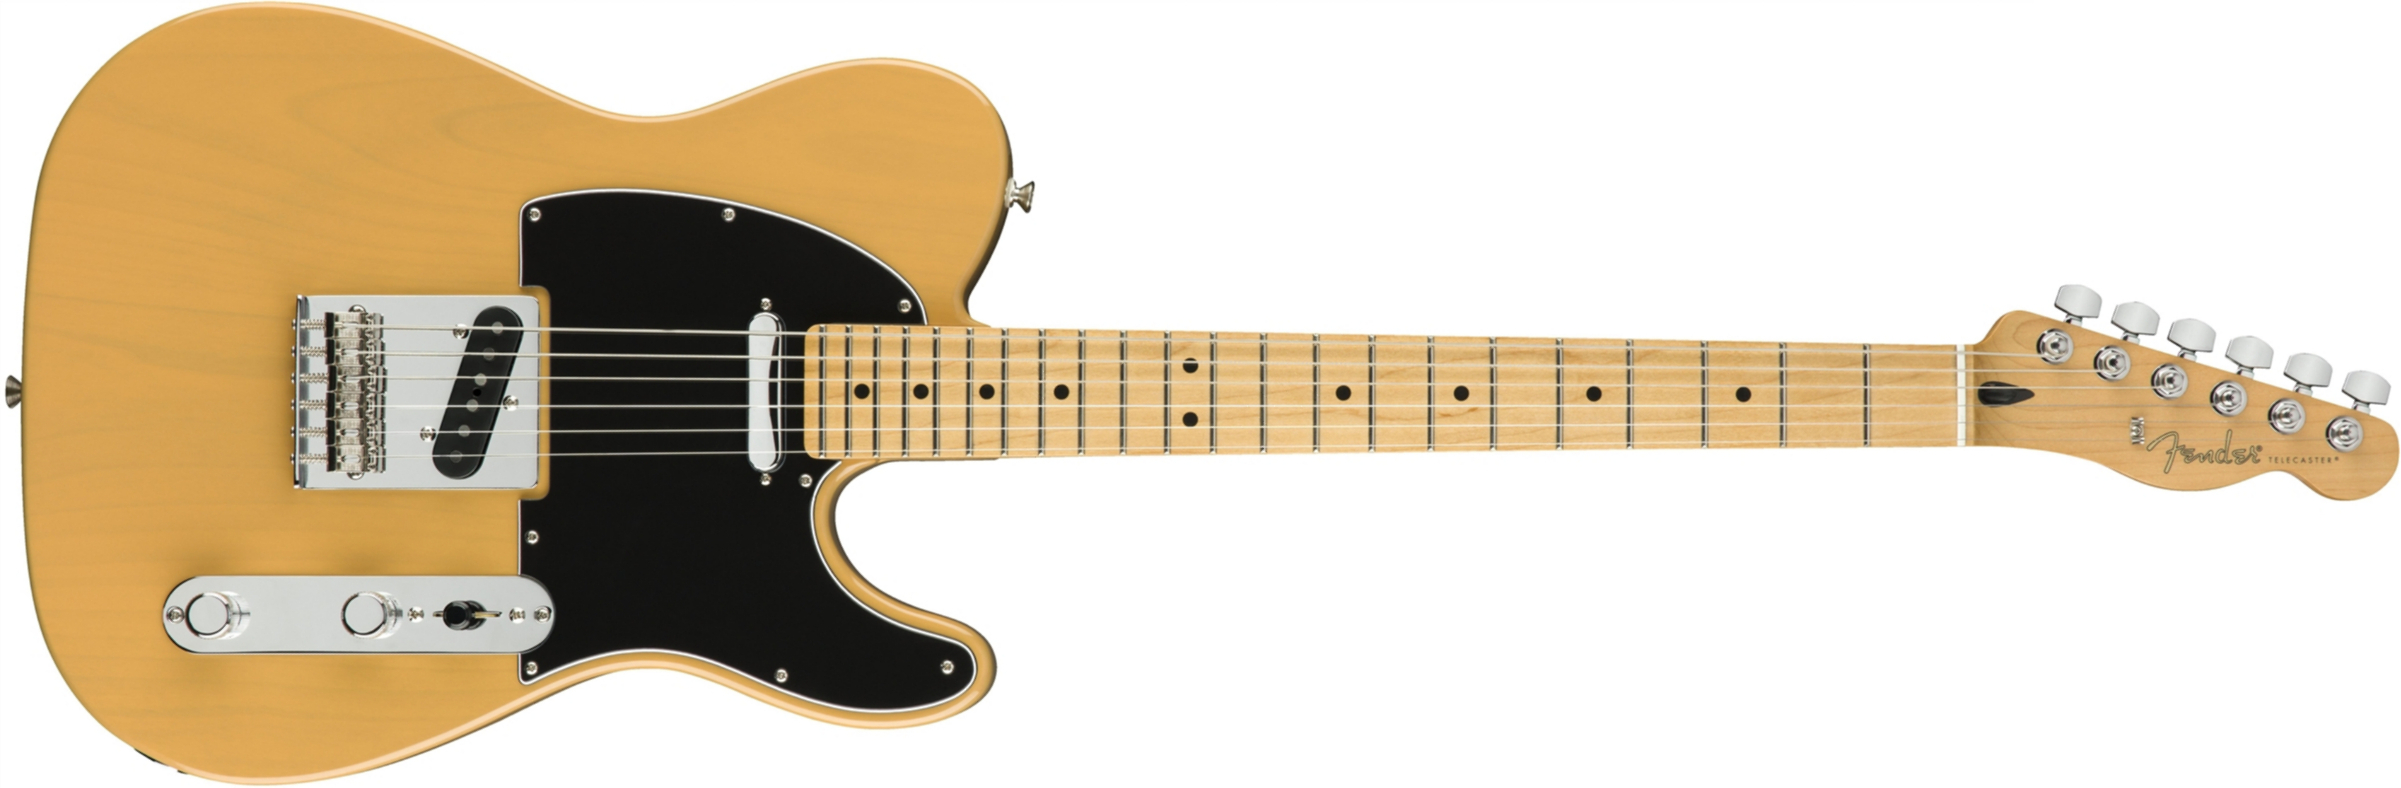 Fender Tele Player Mex Mn - Butterscotch Blonde - Guitarra eléctrica con forma de tel - Main picture